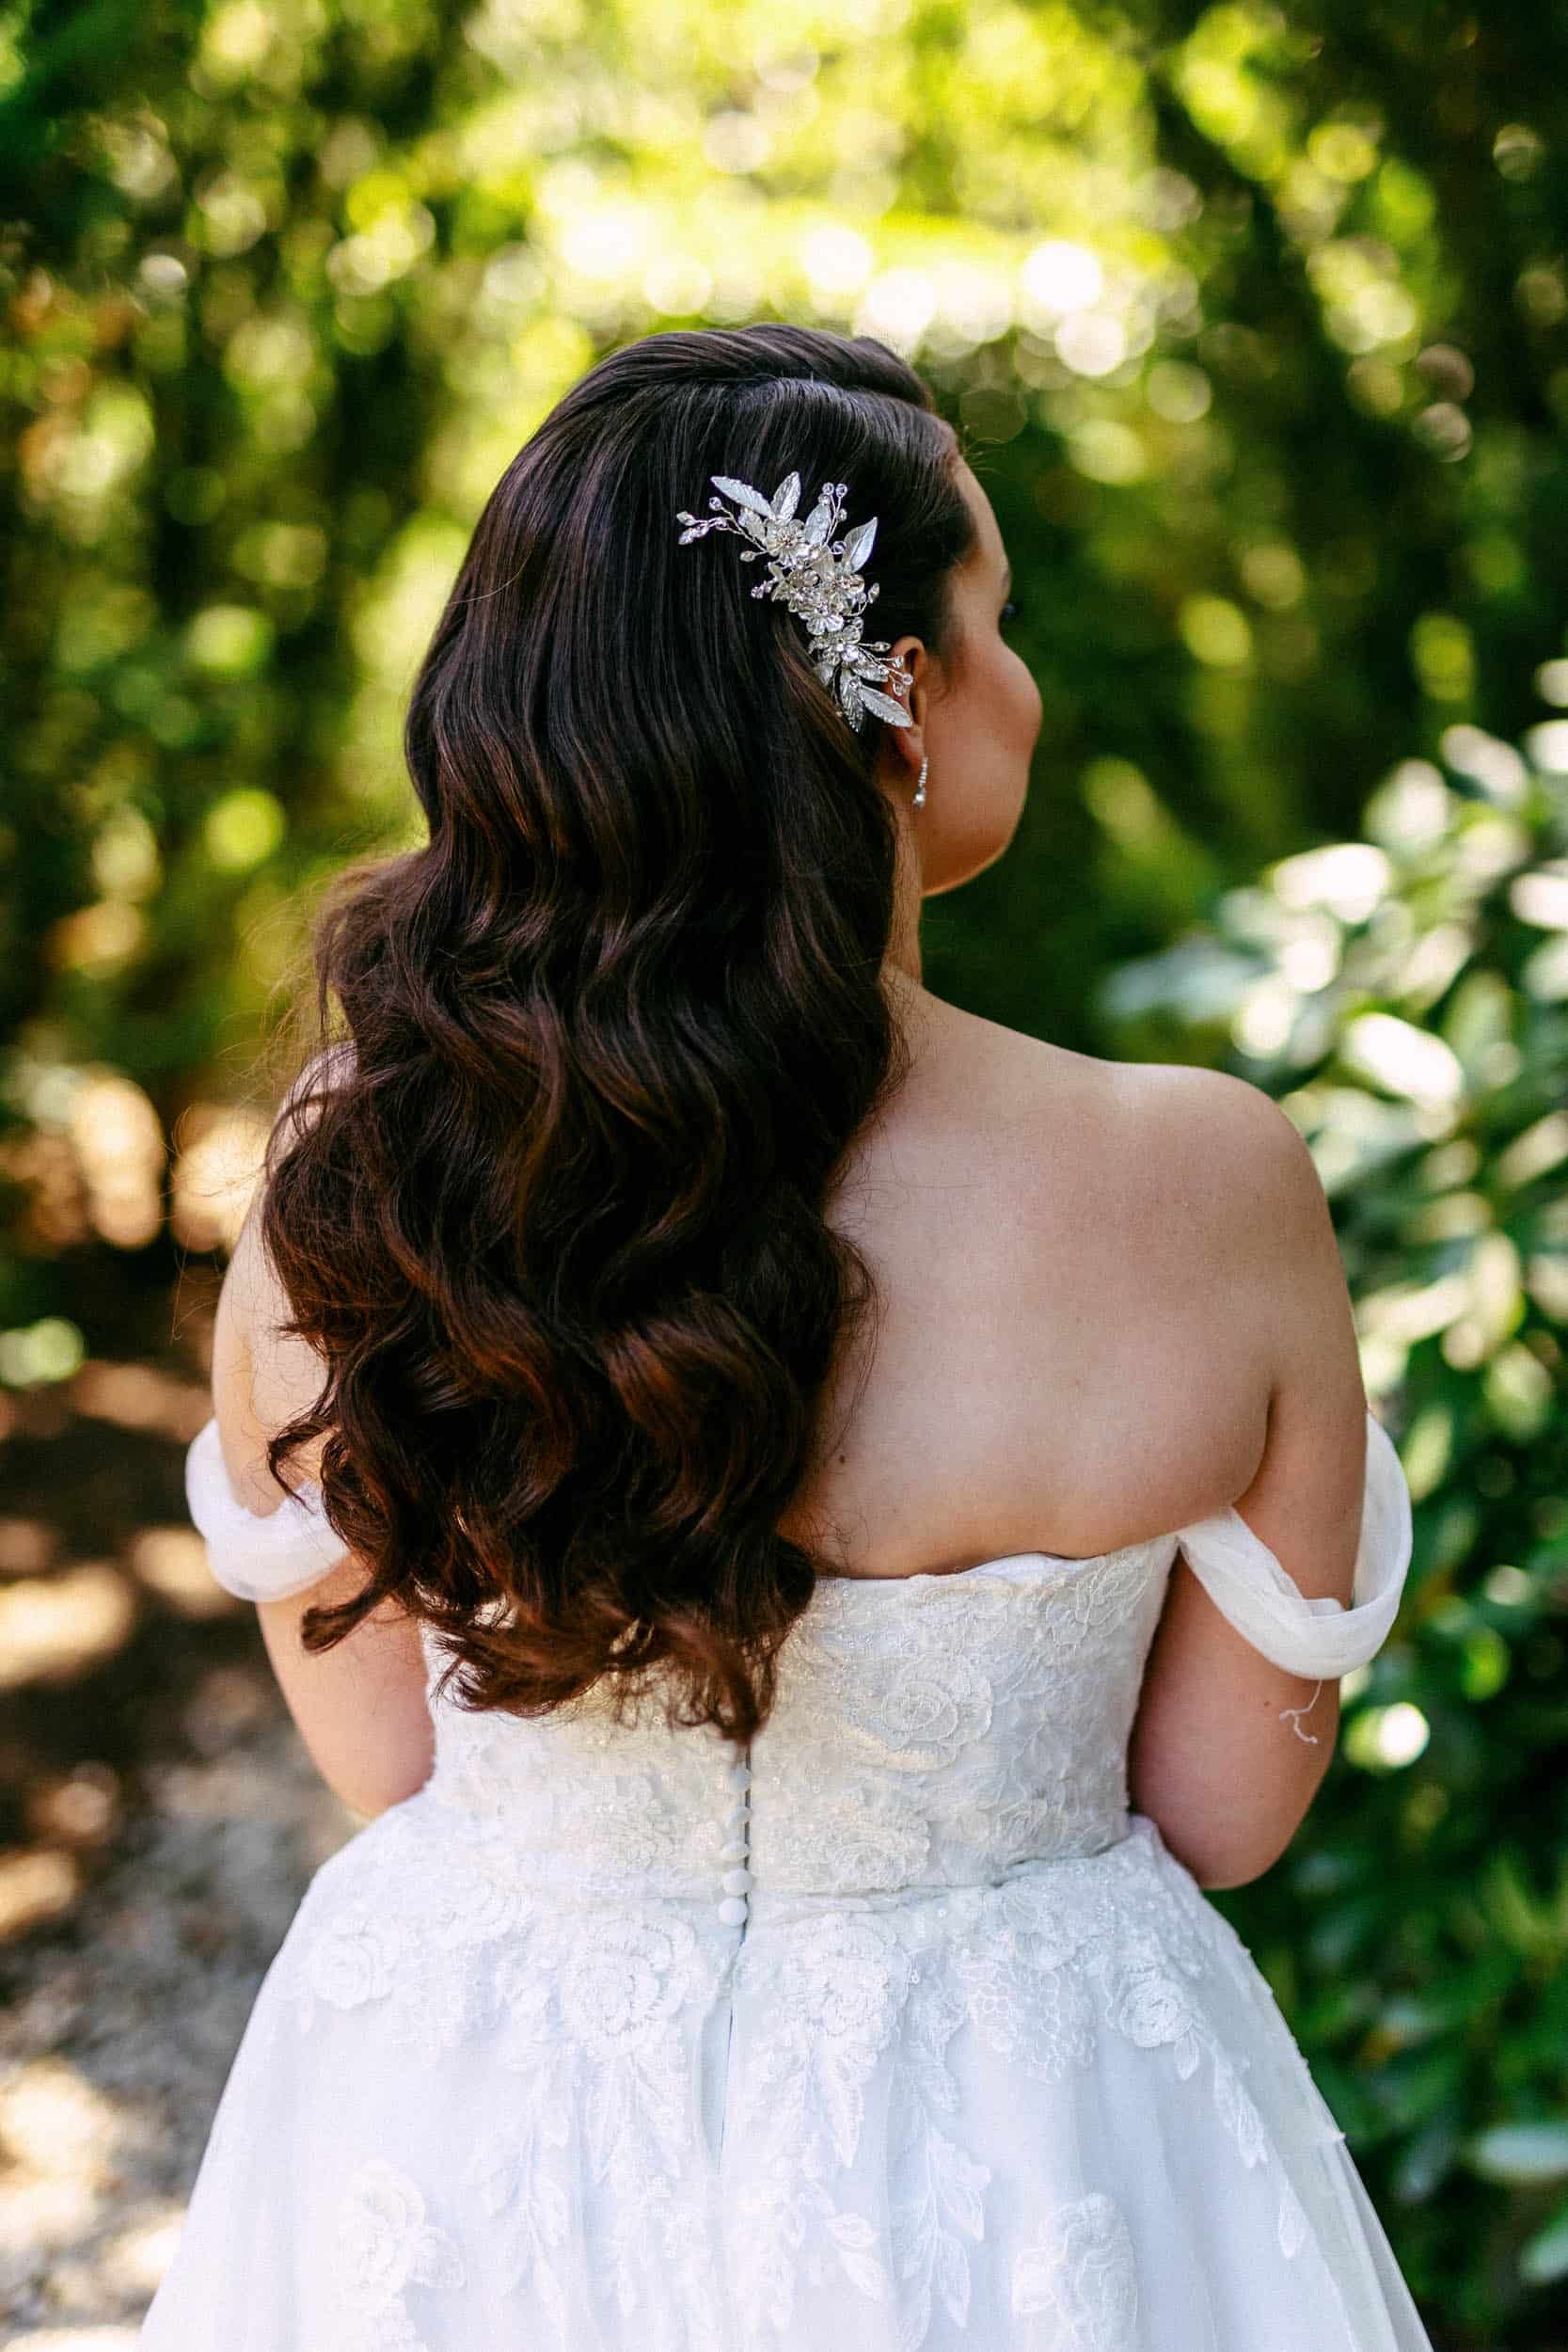 De achterkant van een bruid in trouwjurk die door het bos loopt.